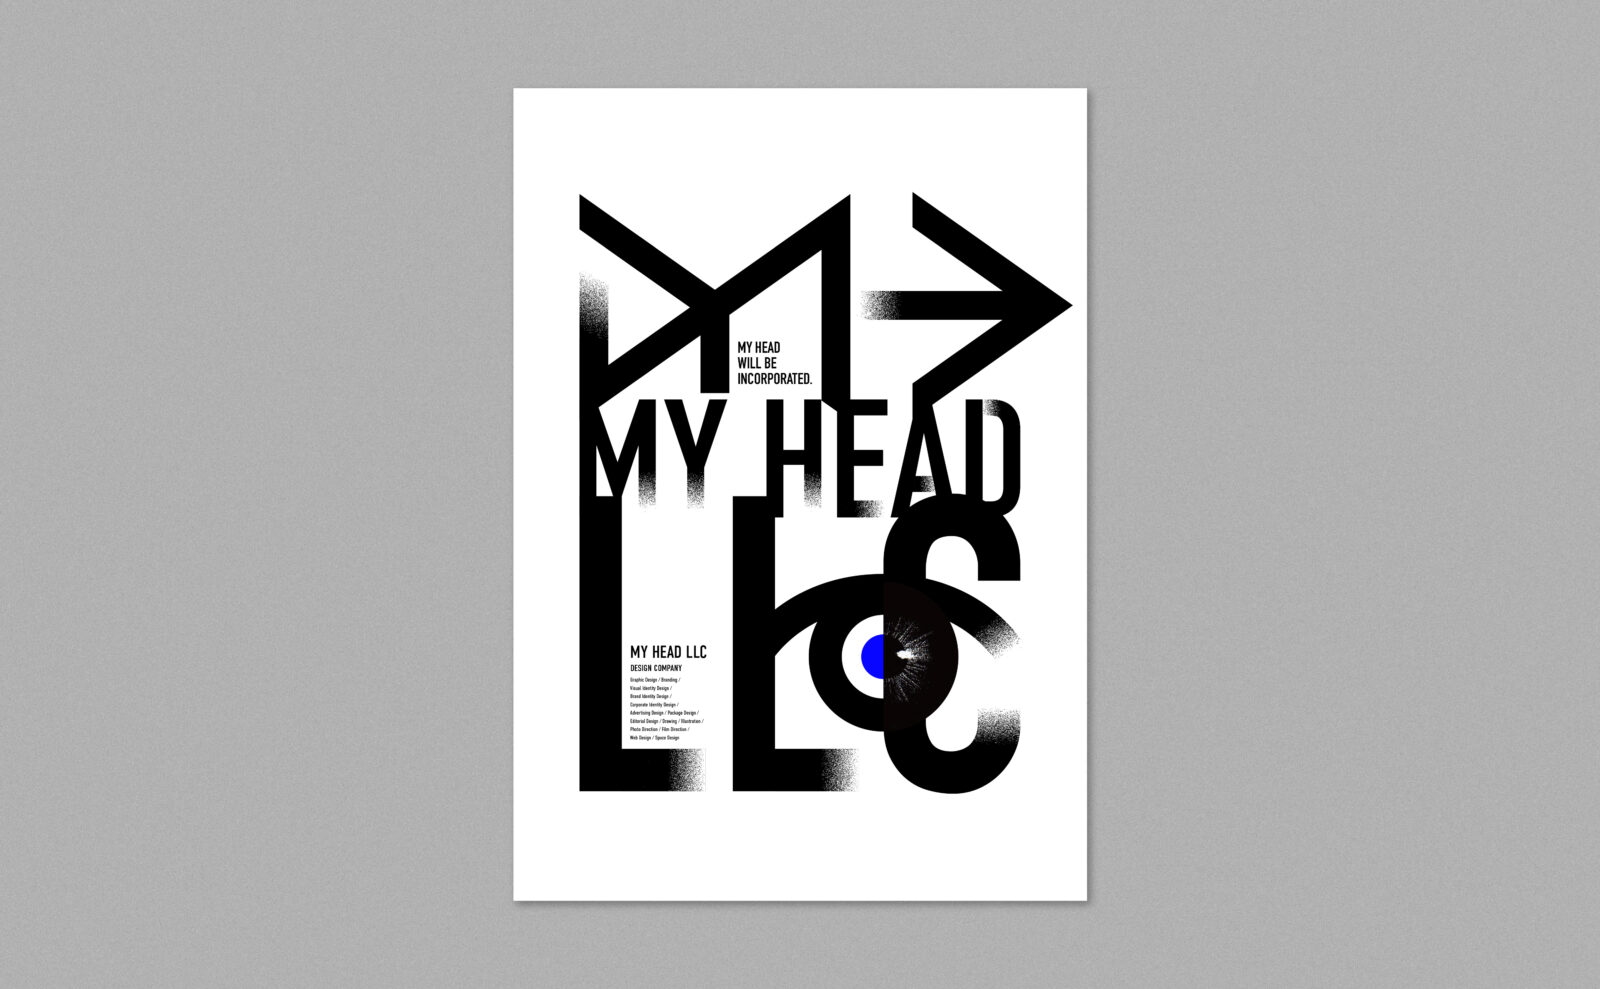 MY HEAD LLC_KV_FIX_01